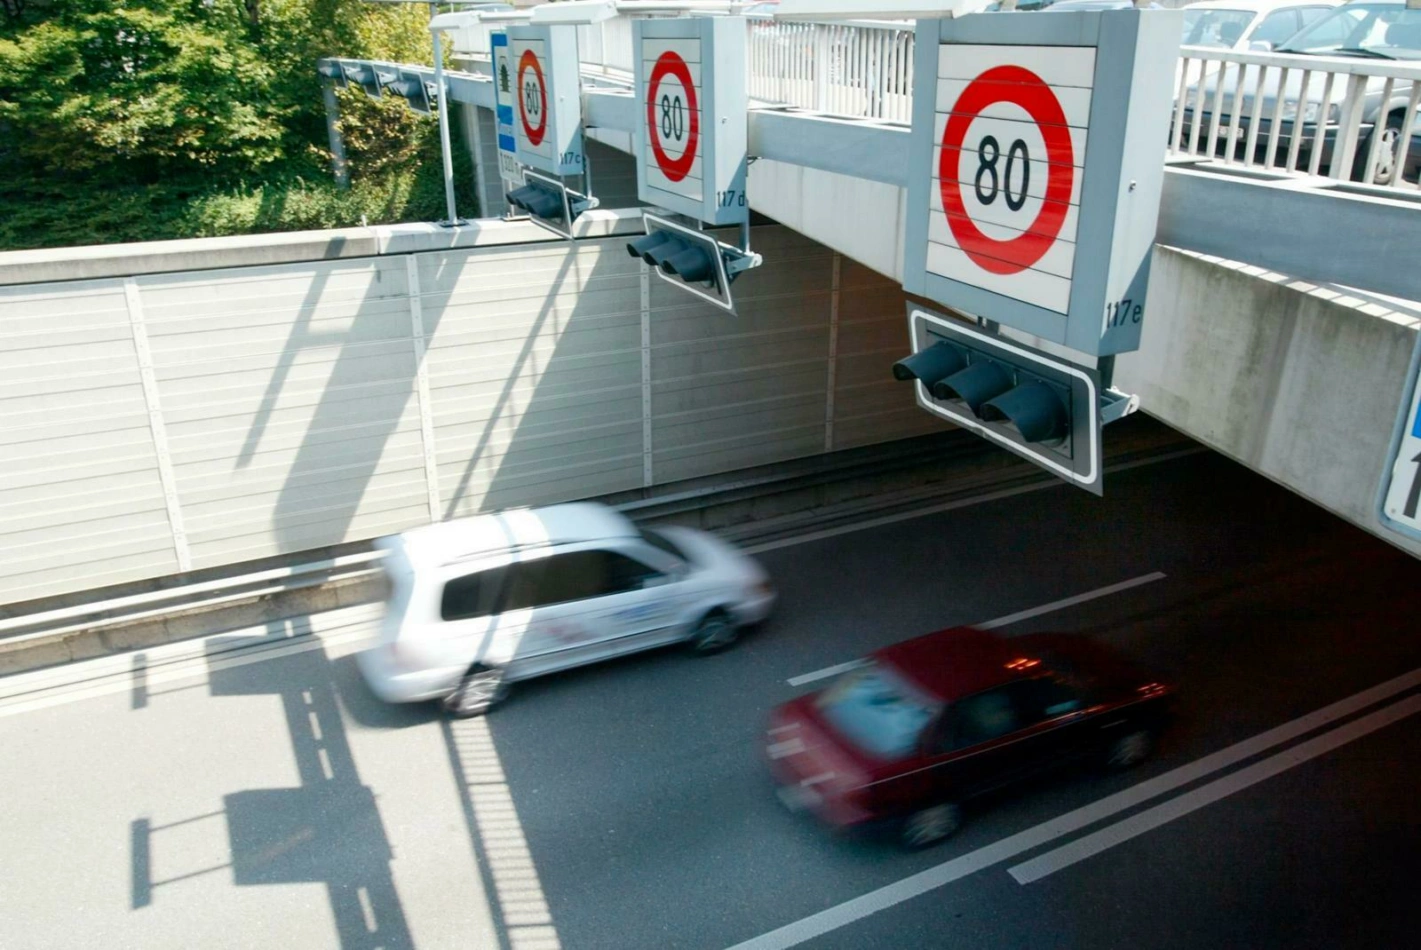 Bald schon ein ganz alltägliches Bild: Auf vielen Autobahnenstrecken wird Tempo 80 signalisiert, um Staus zu verhindern. Foto: Urs Baumann